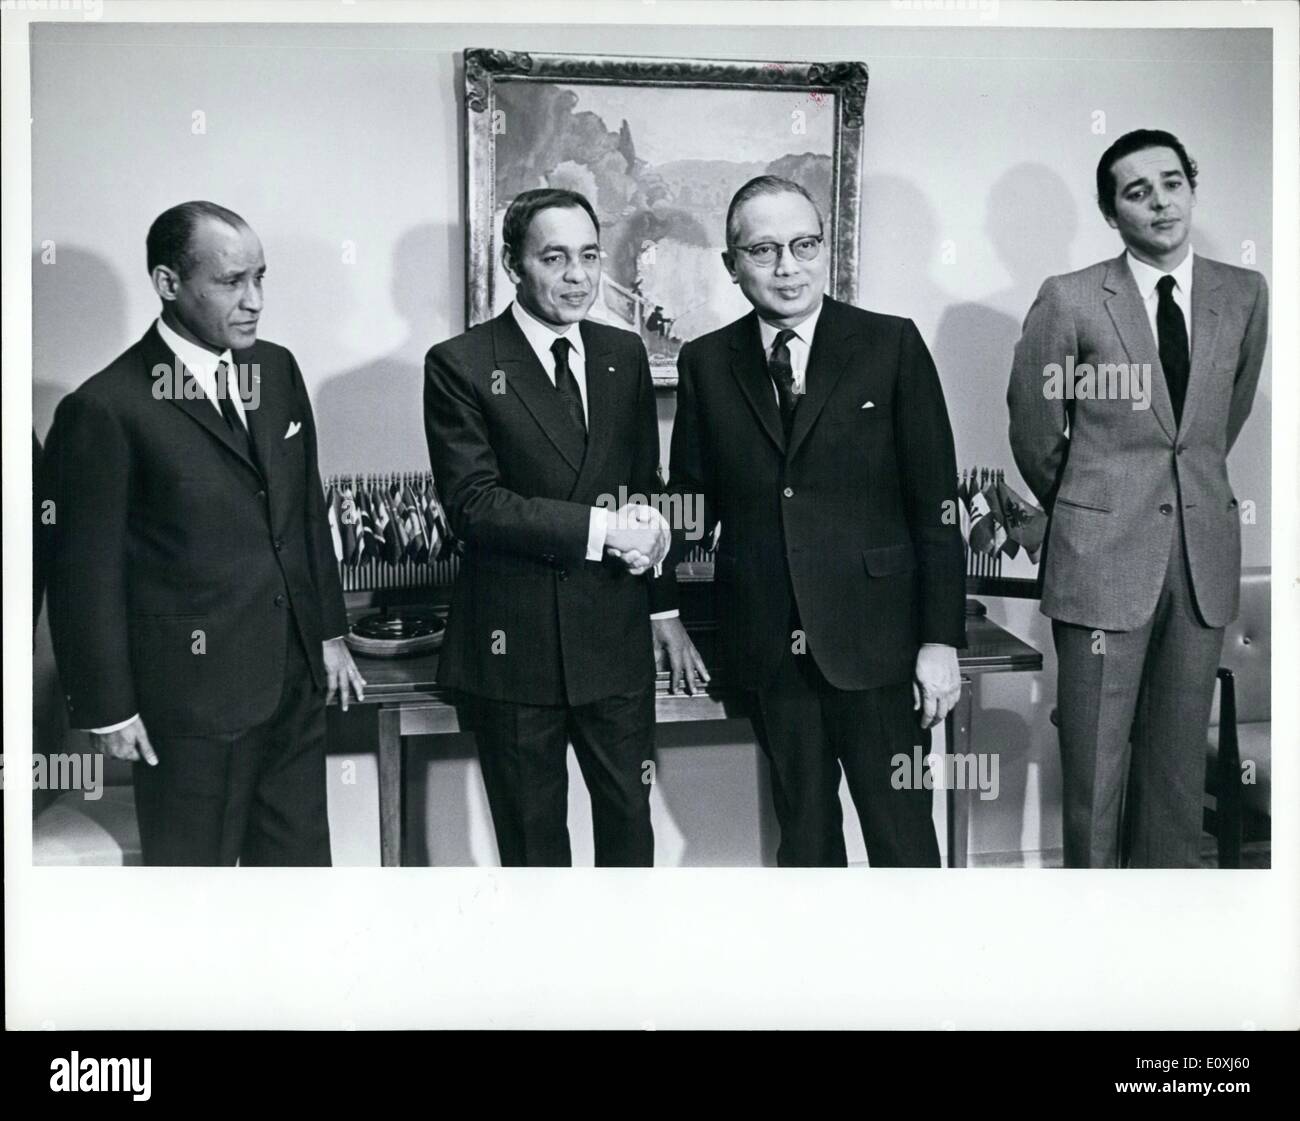 10 févr. 02, 1967 - Le Roi Haussen II du Maroc a effectué une visite officielle au siège de l'Organisation des Nations Unies aujourd'hui. Il s'est entretenu avec le Secrétaire général U Thant et assisté à un dîner donné en son honneur par le Secrétaire général. Le Roi Hassan (2e de gauche) se serrer la main avec Secrétaire général U Thant. À gauche est l'Ambassadeur jour Ould Sidi Baba, Représentant permanent du Maroc auprès de l'ONU, et à la droite est le Prince Moulay Abdallah. Banque D'Images